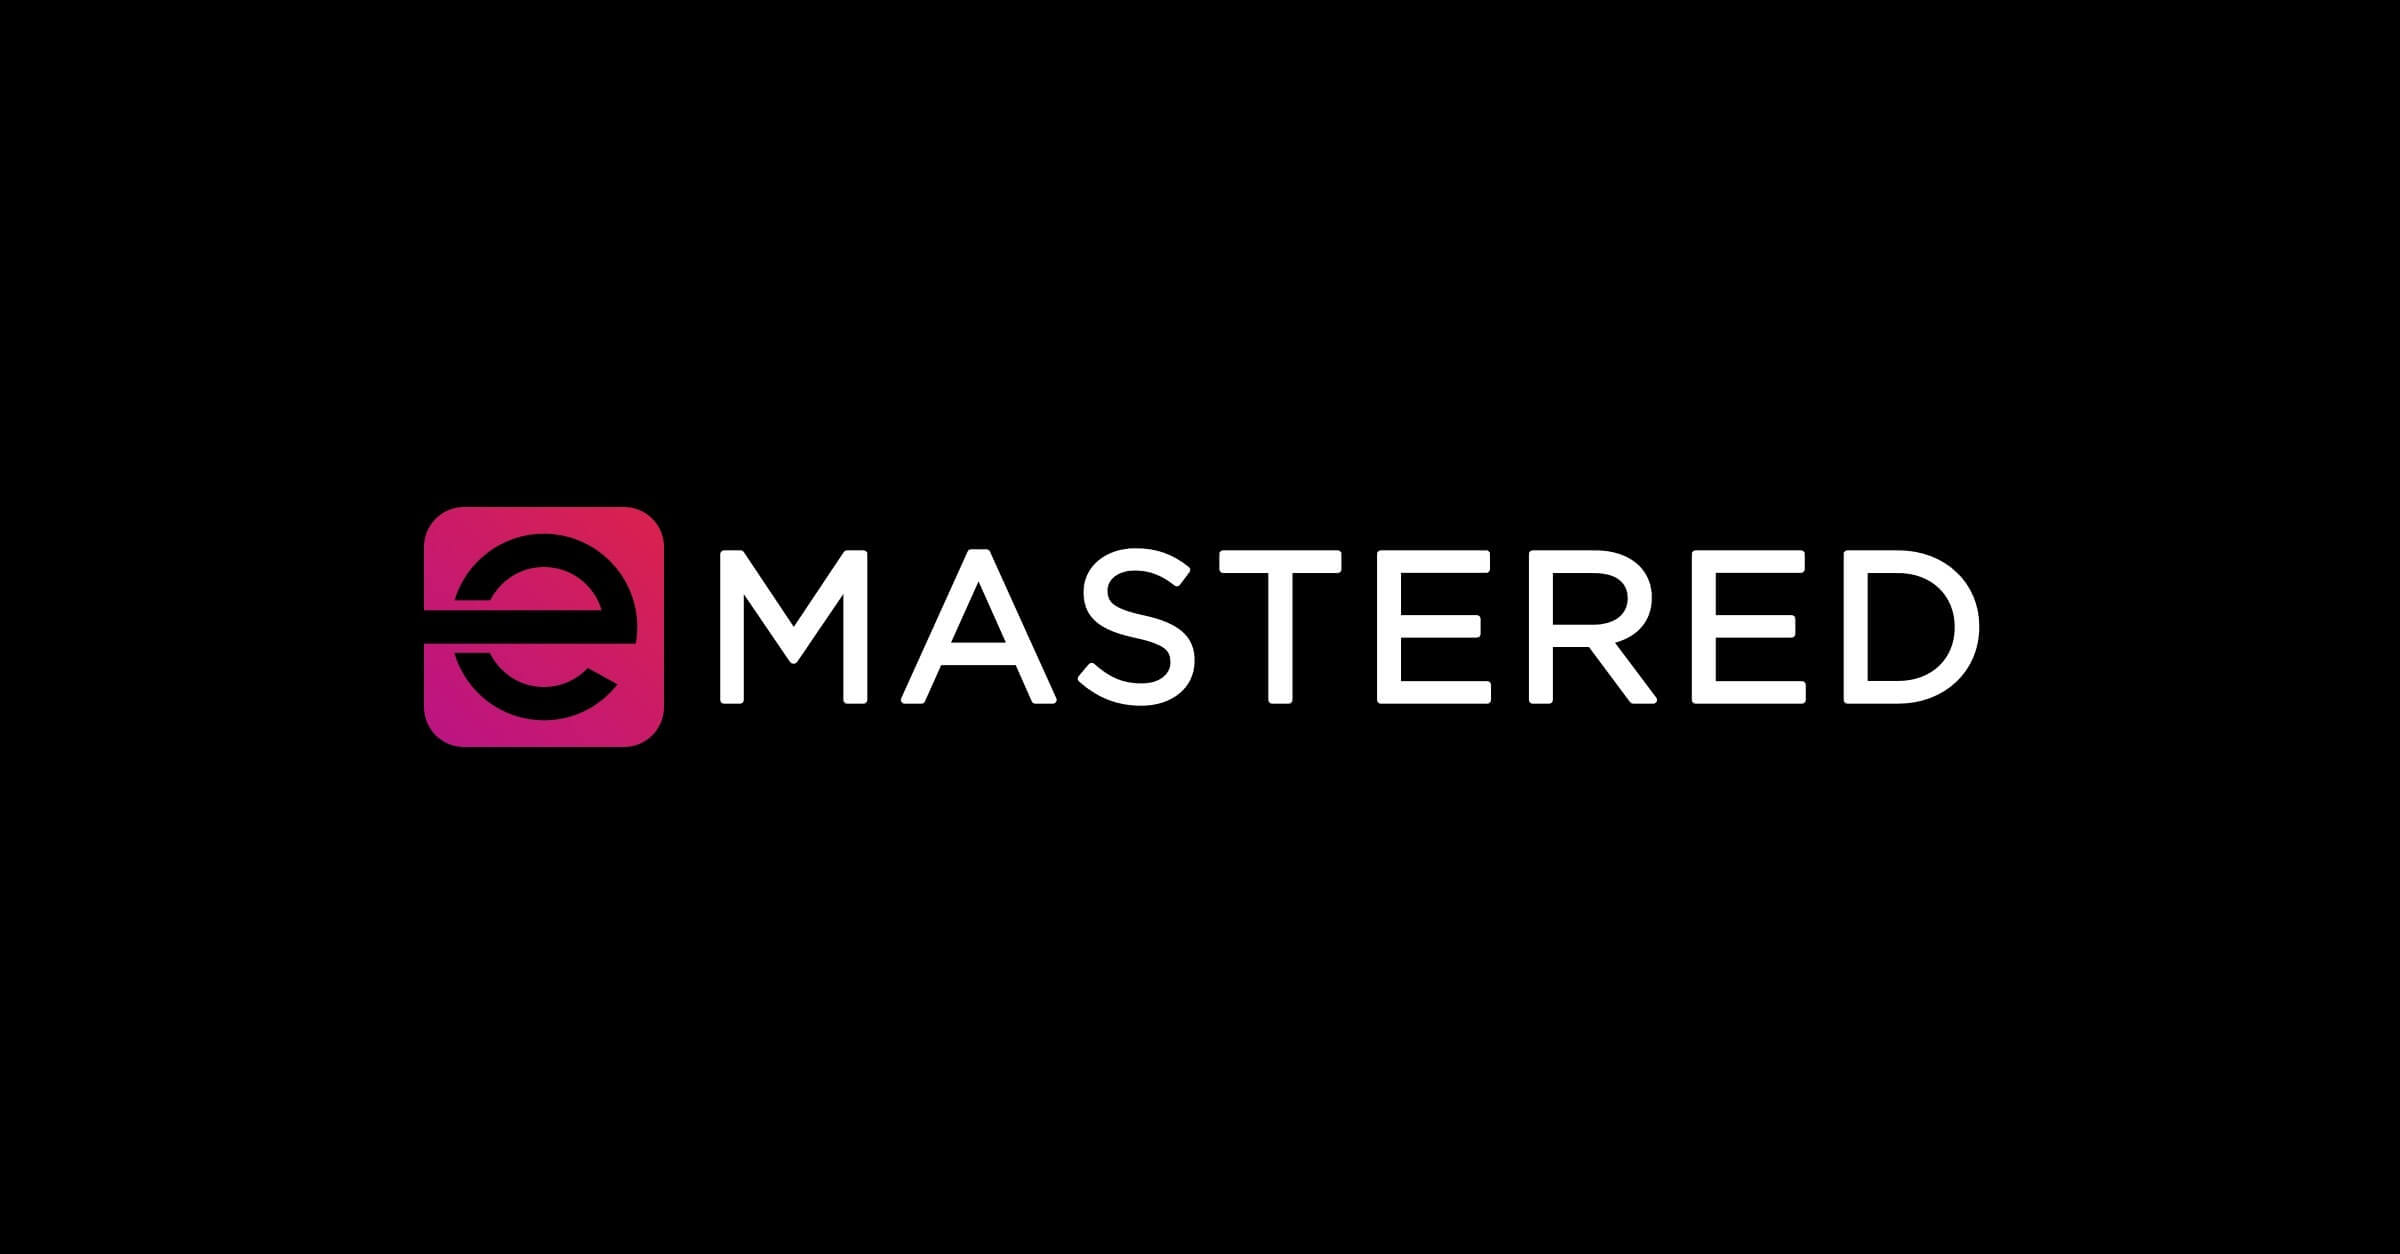 Emastered-音楽トラックのサウンドを改善するためのオンラインマスターツール